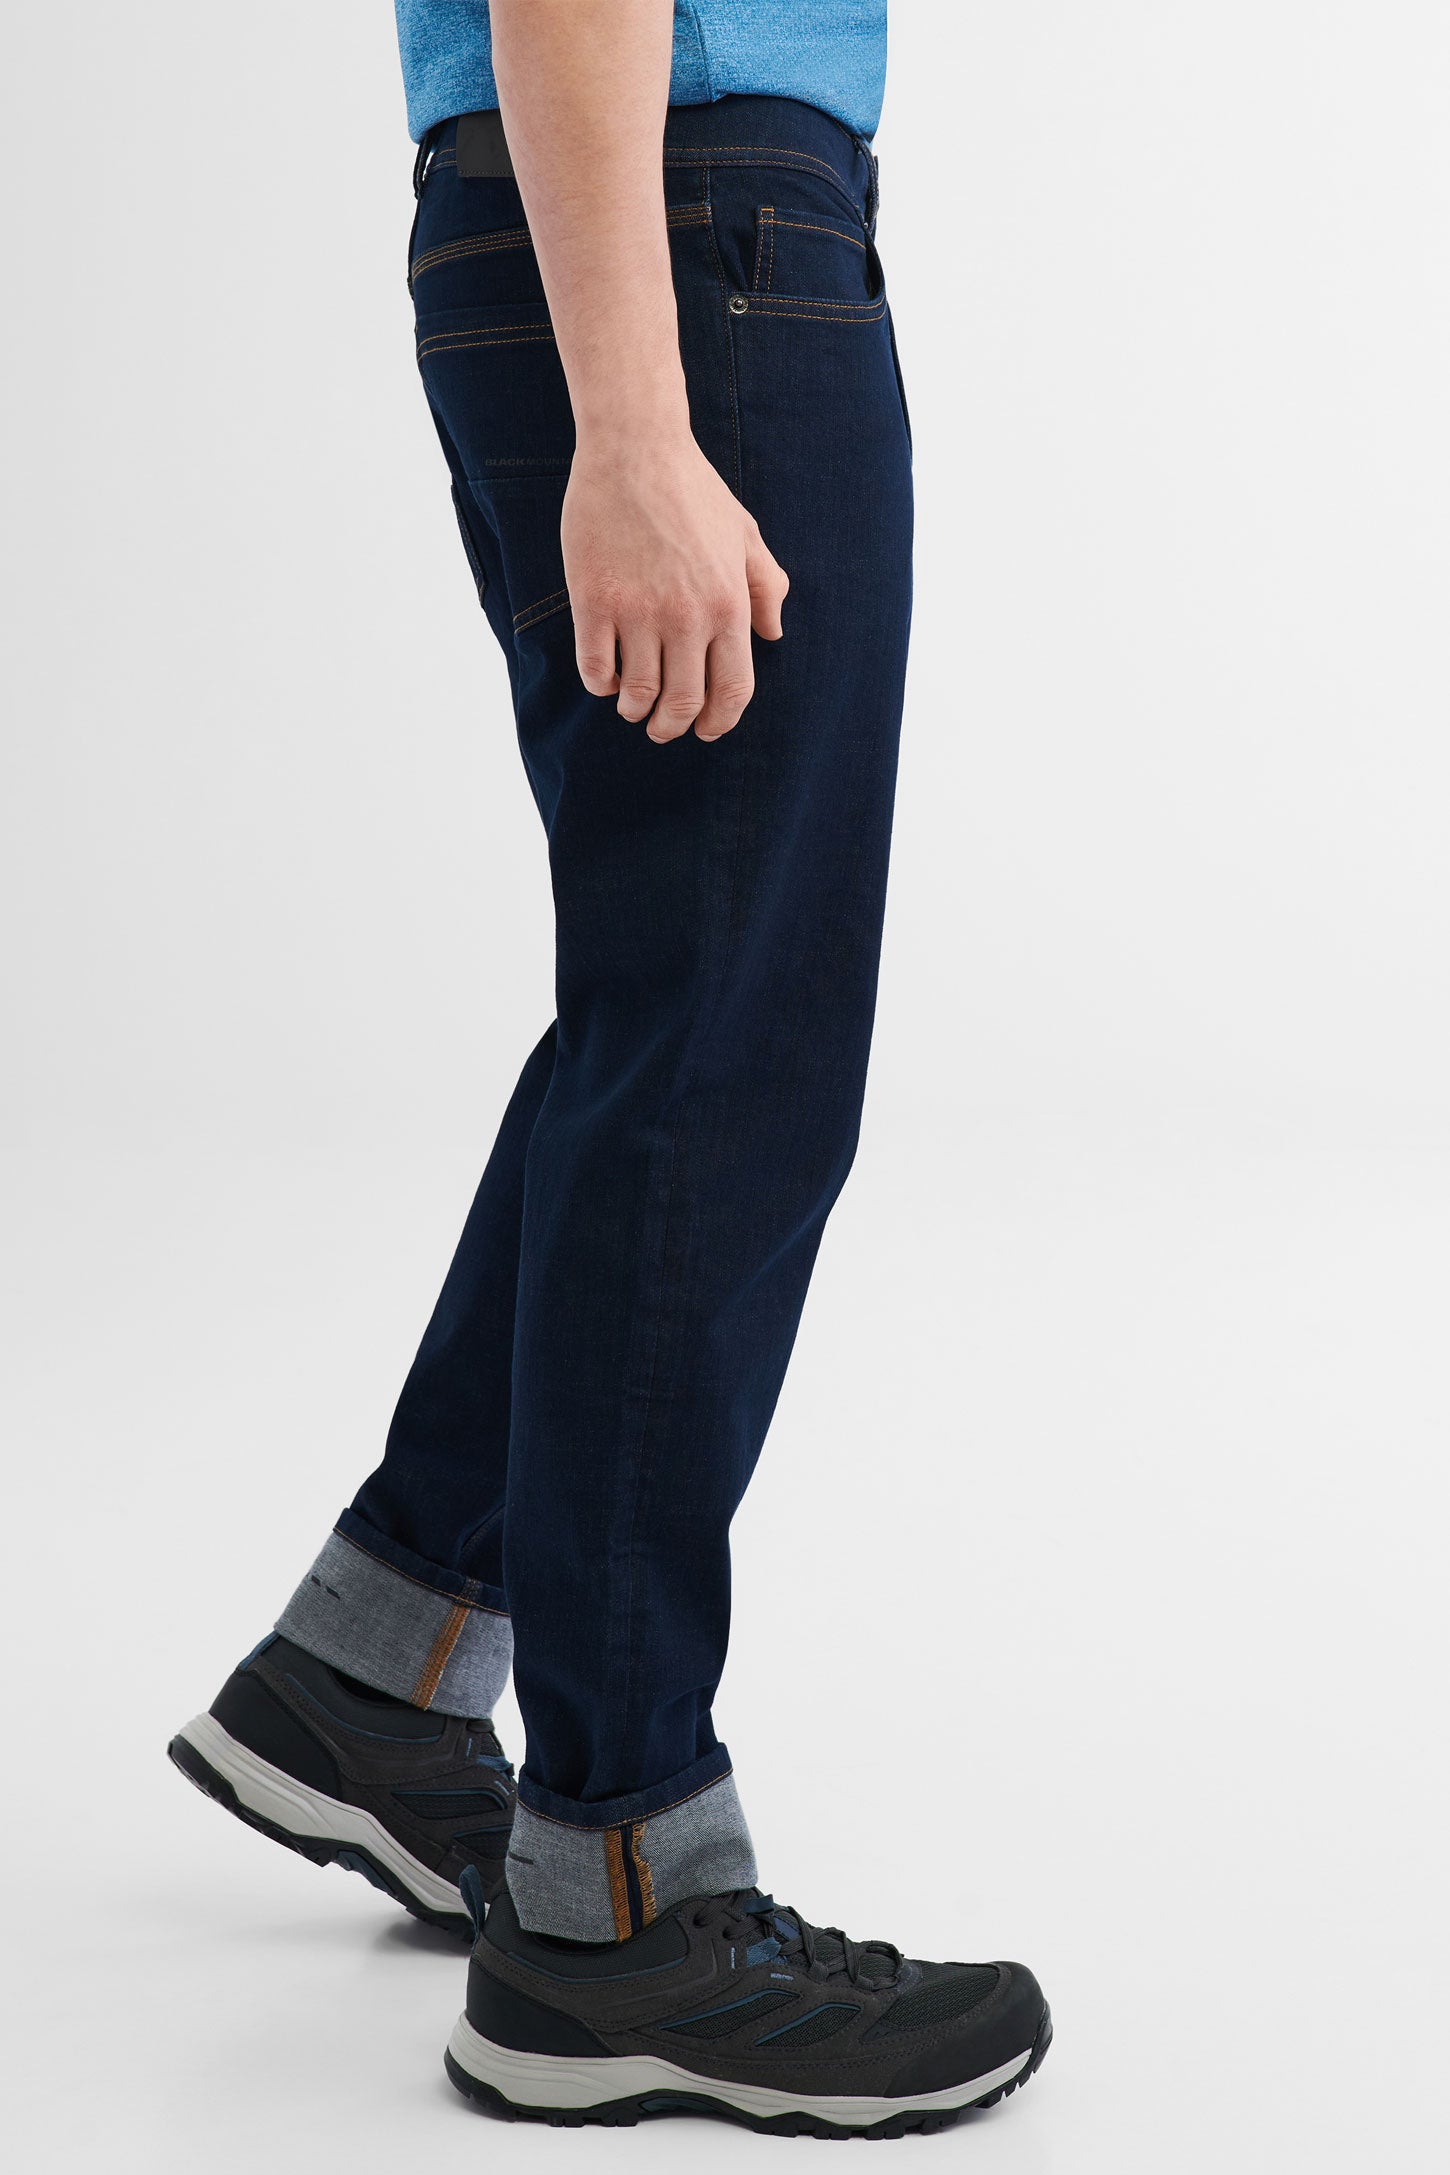 Jeans extensible 4 sens BM - Homme && DENIM FONCE